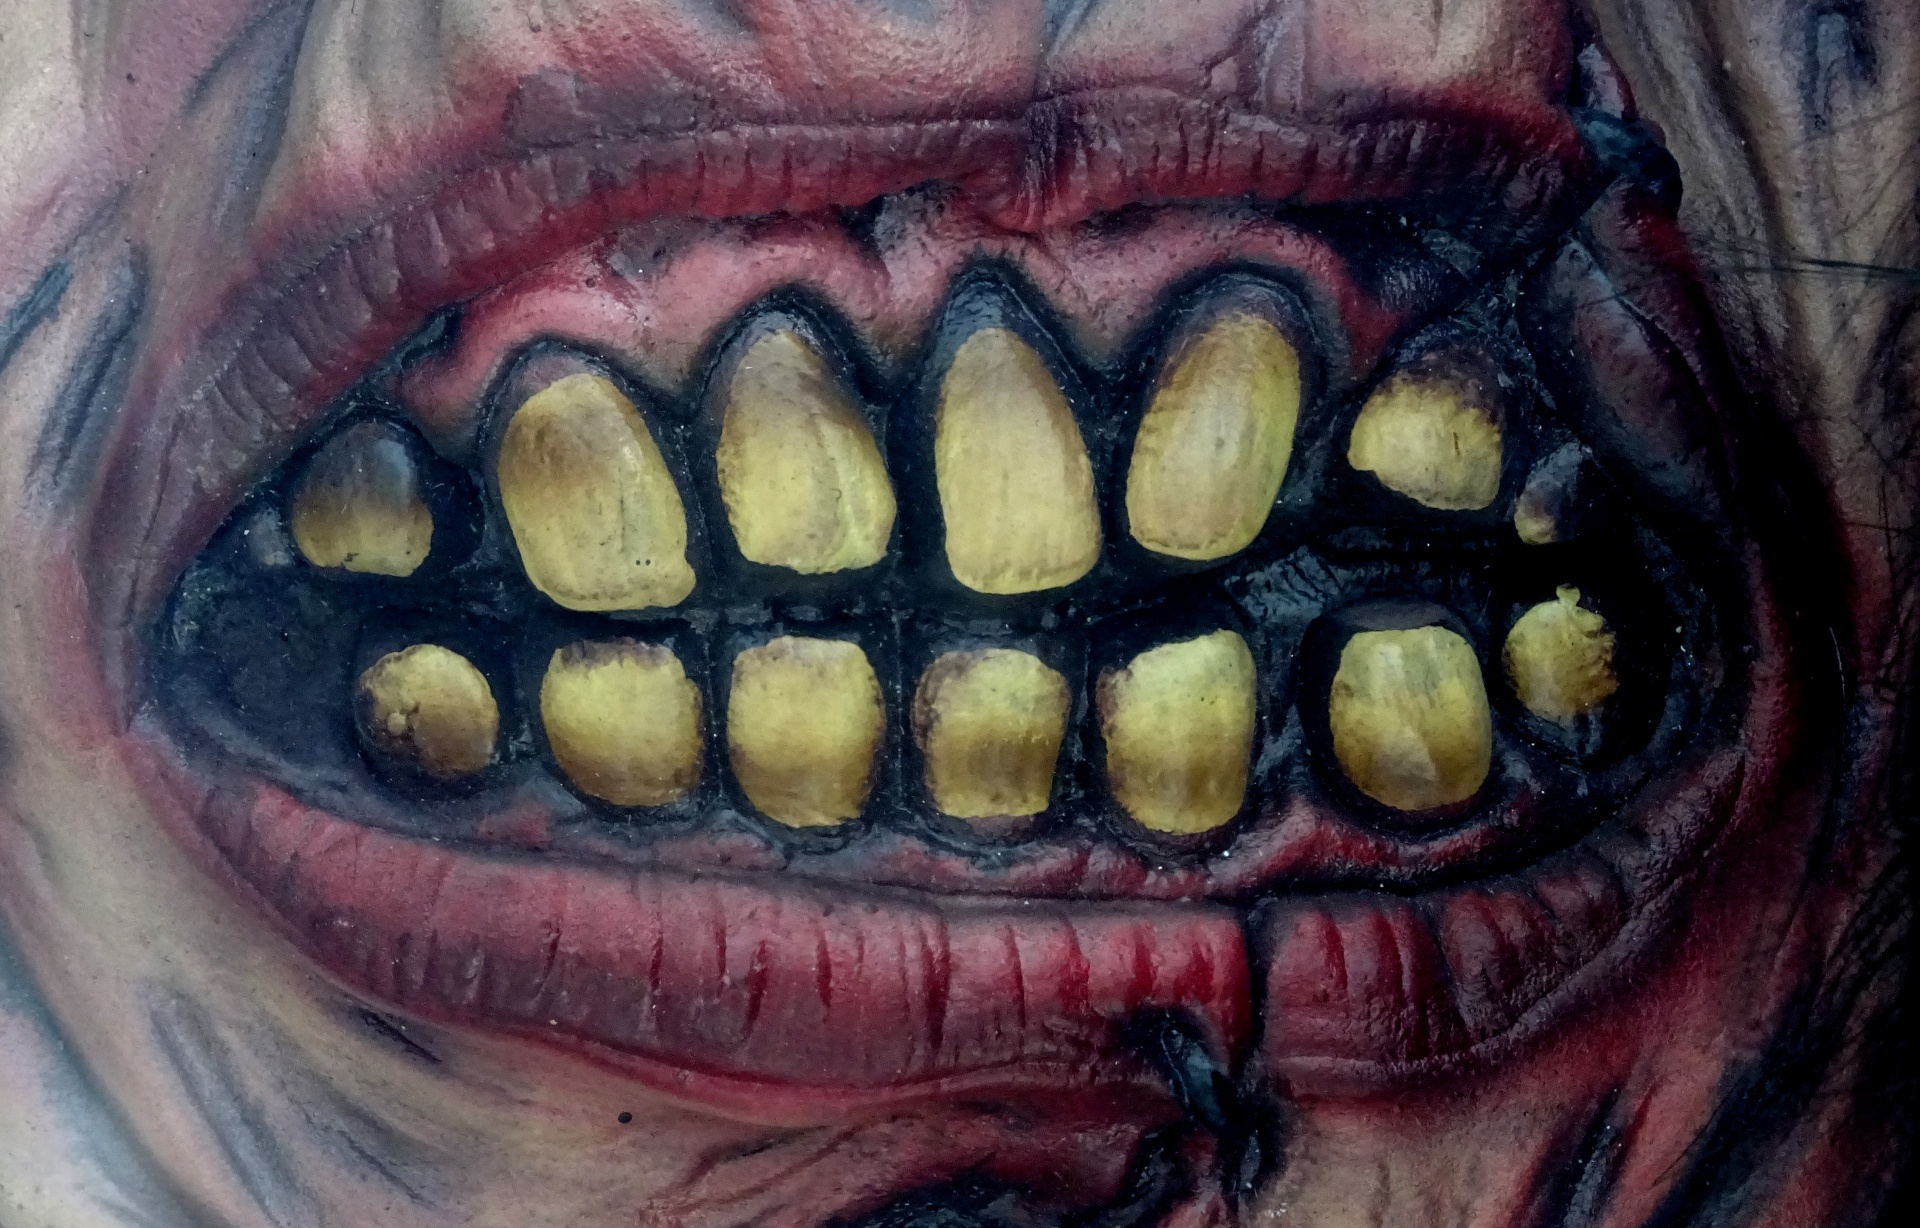 Scary Monsters Teeth